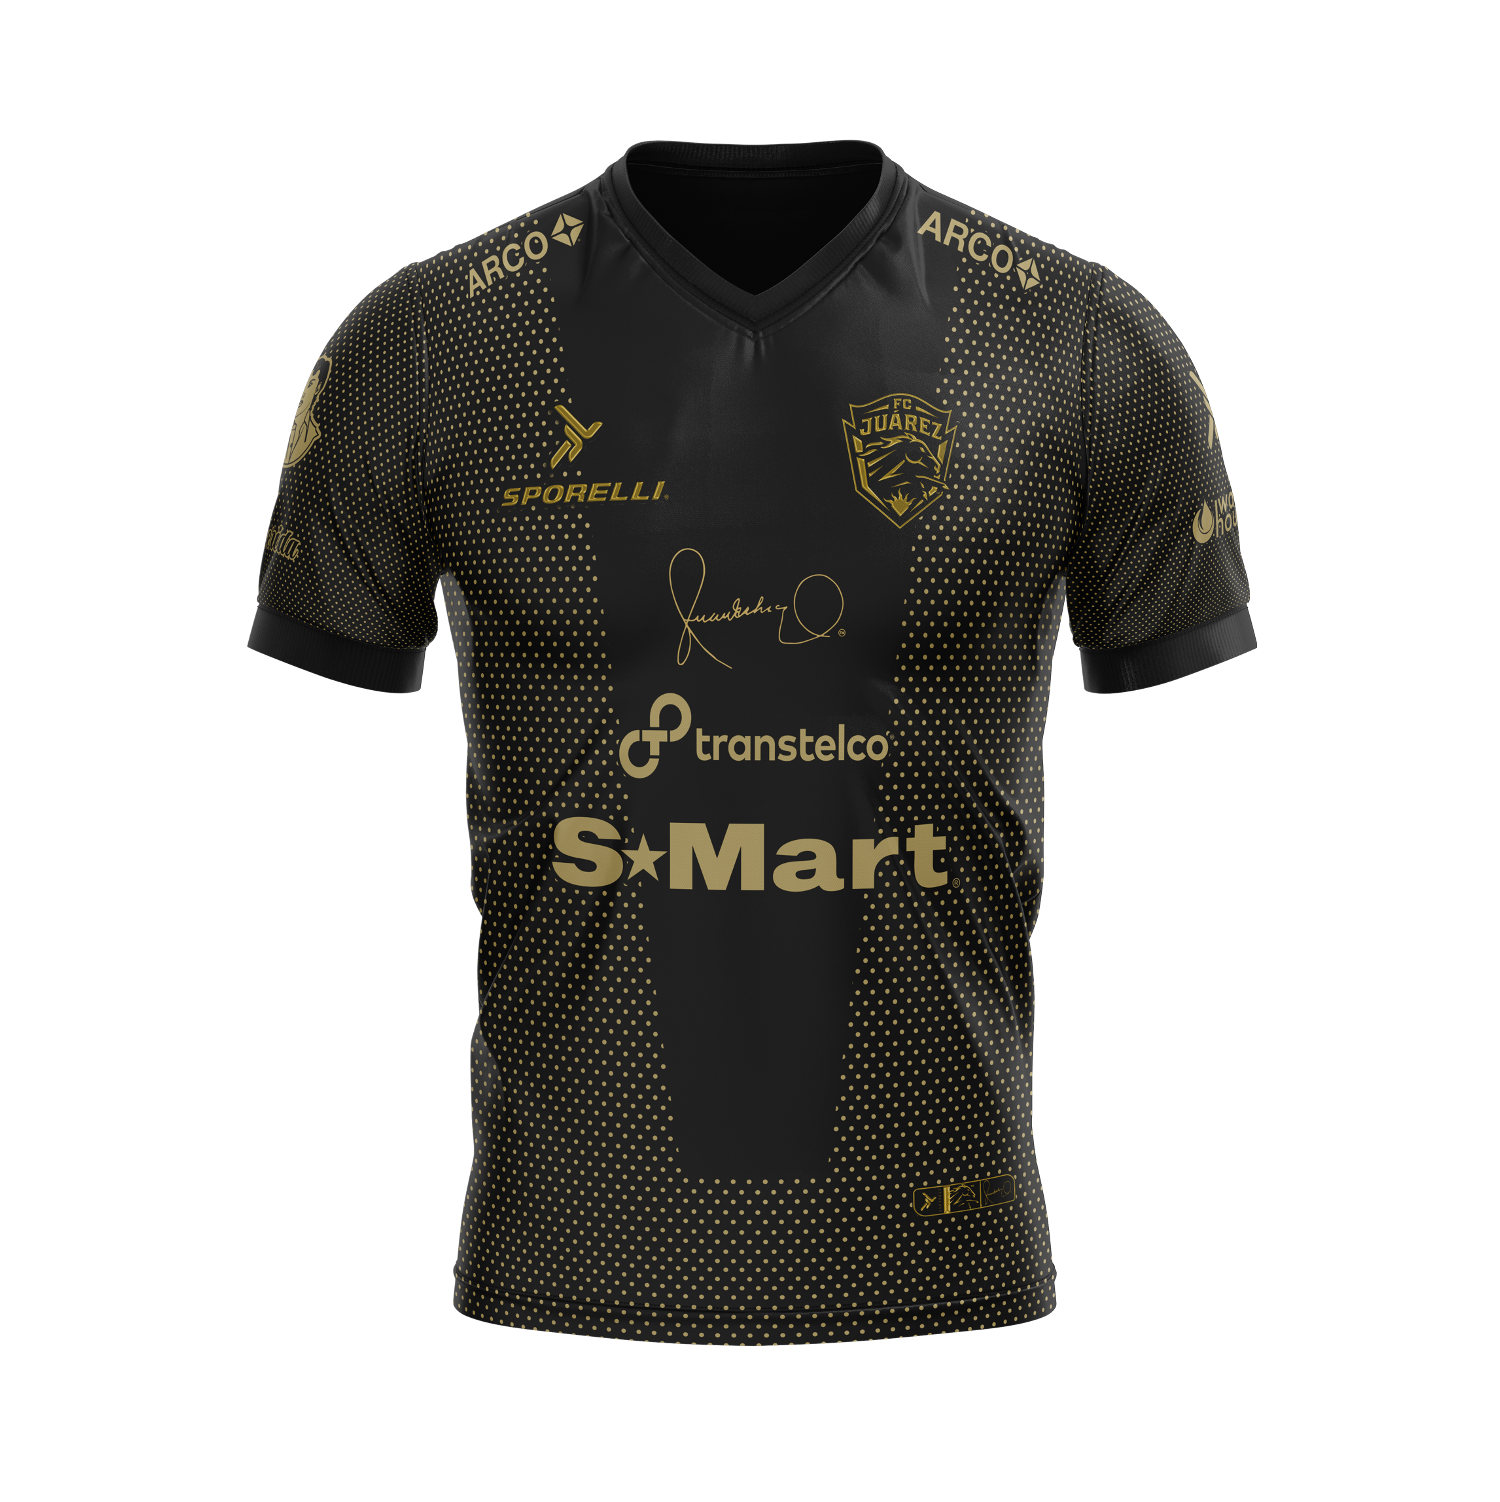 Nuevo jersey de Bravos edición limitada Juan Gabriel 2022 